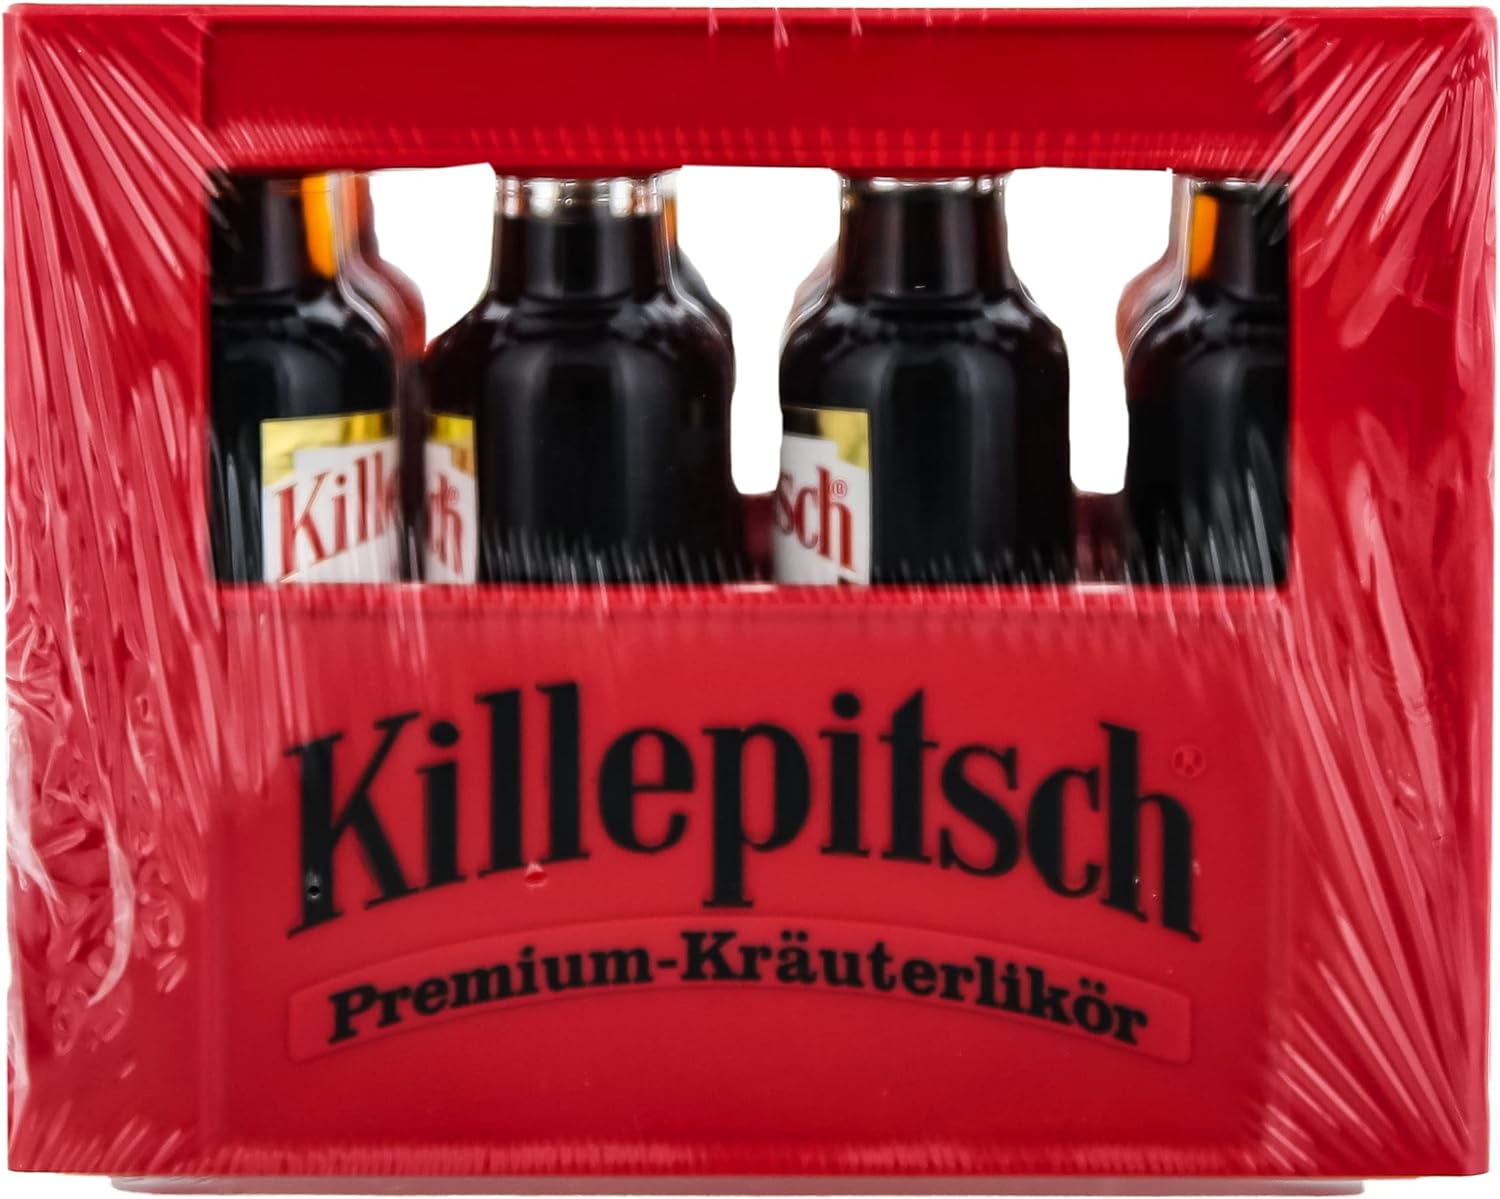 Killepitsch Premium-Kräuterlikör Miniature//12 x 0,02 L 42% | Kräuterlikör  | Likör | Spirituosen | Bundesbrand